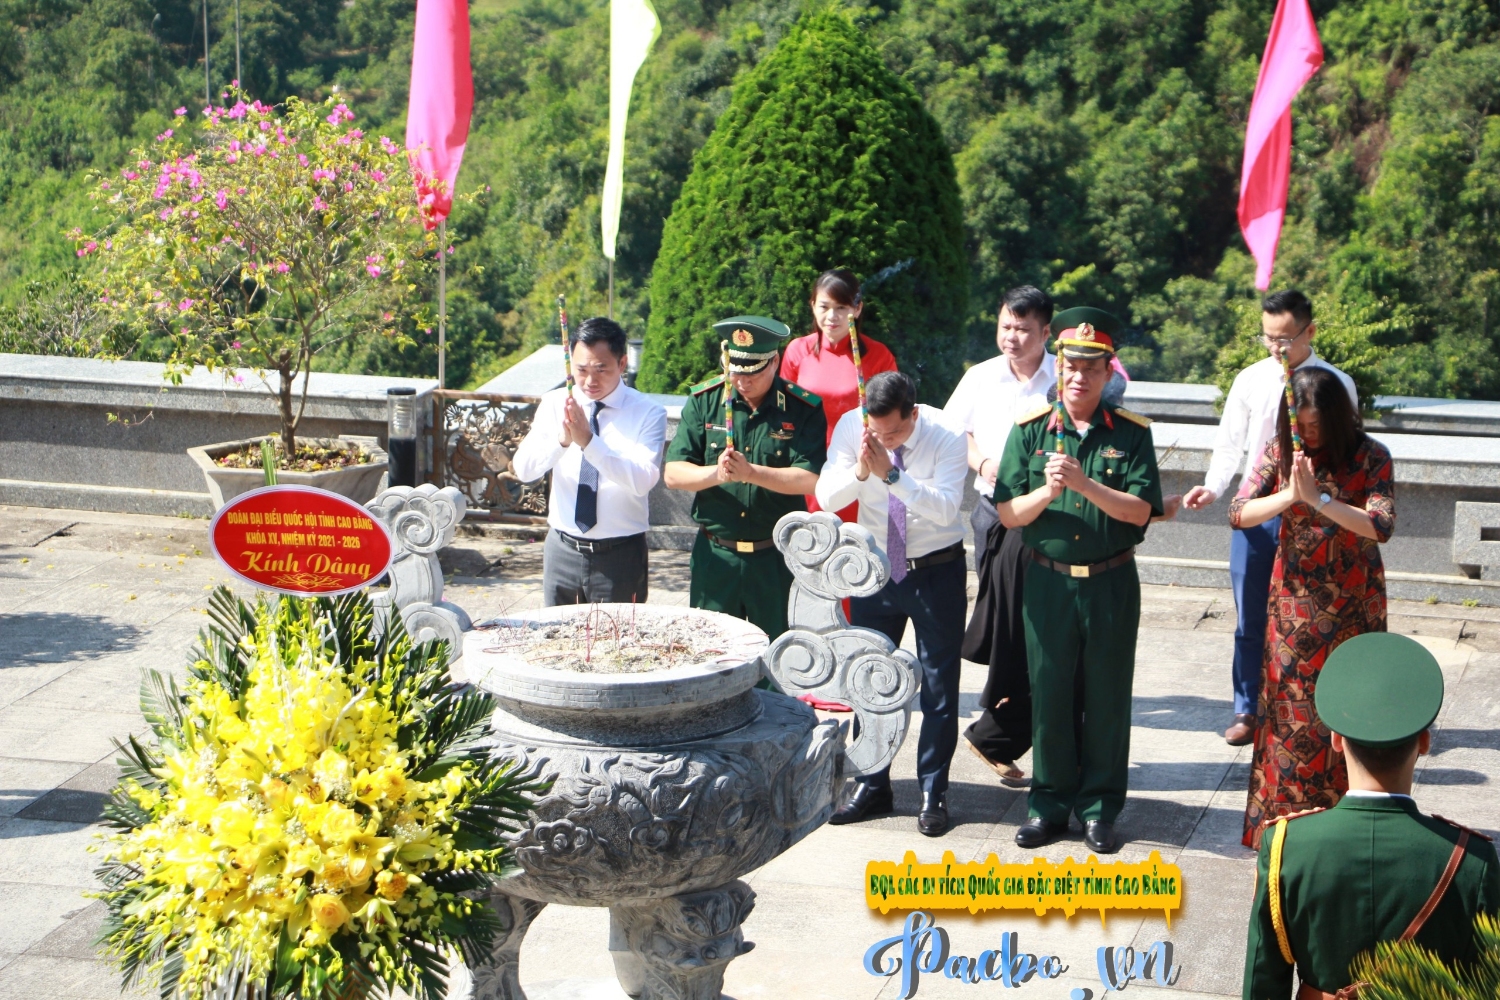 Đoàn đại biểu Quốc hội tỉnh Cao Bằng dâng hoa, dâng hương Đền thờ Chủ tịch Hồ Chí Minh trước thềm kỳ họp thứ nhất Quốc hội khóa XV